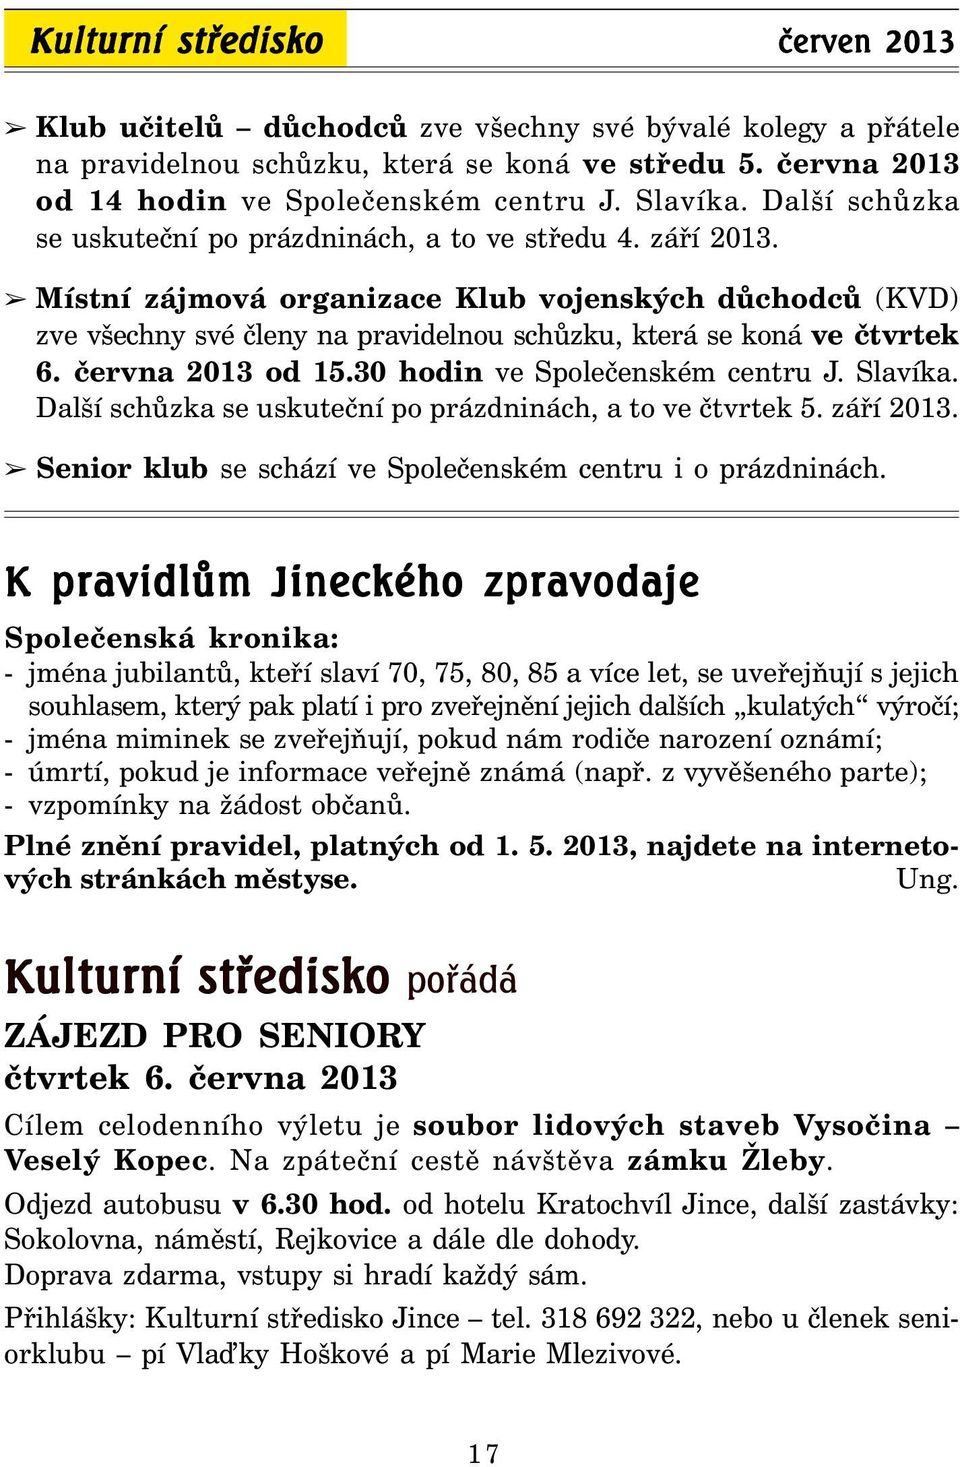 Místní zájmová organizace Klub vojenských důchodců (KVD) zve všechny své členy na pravidelnou schůzku, která se koná ve čtvrtek 6. června 2013 od 15.30 hodin ve Společenském centru J. Slavíka.